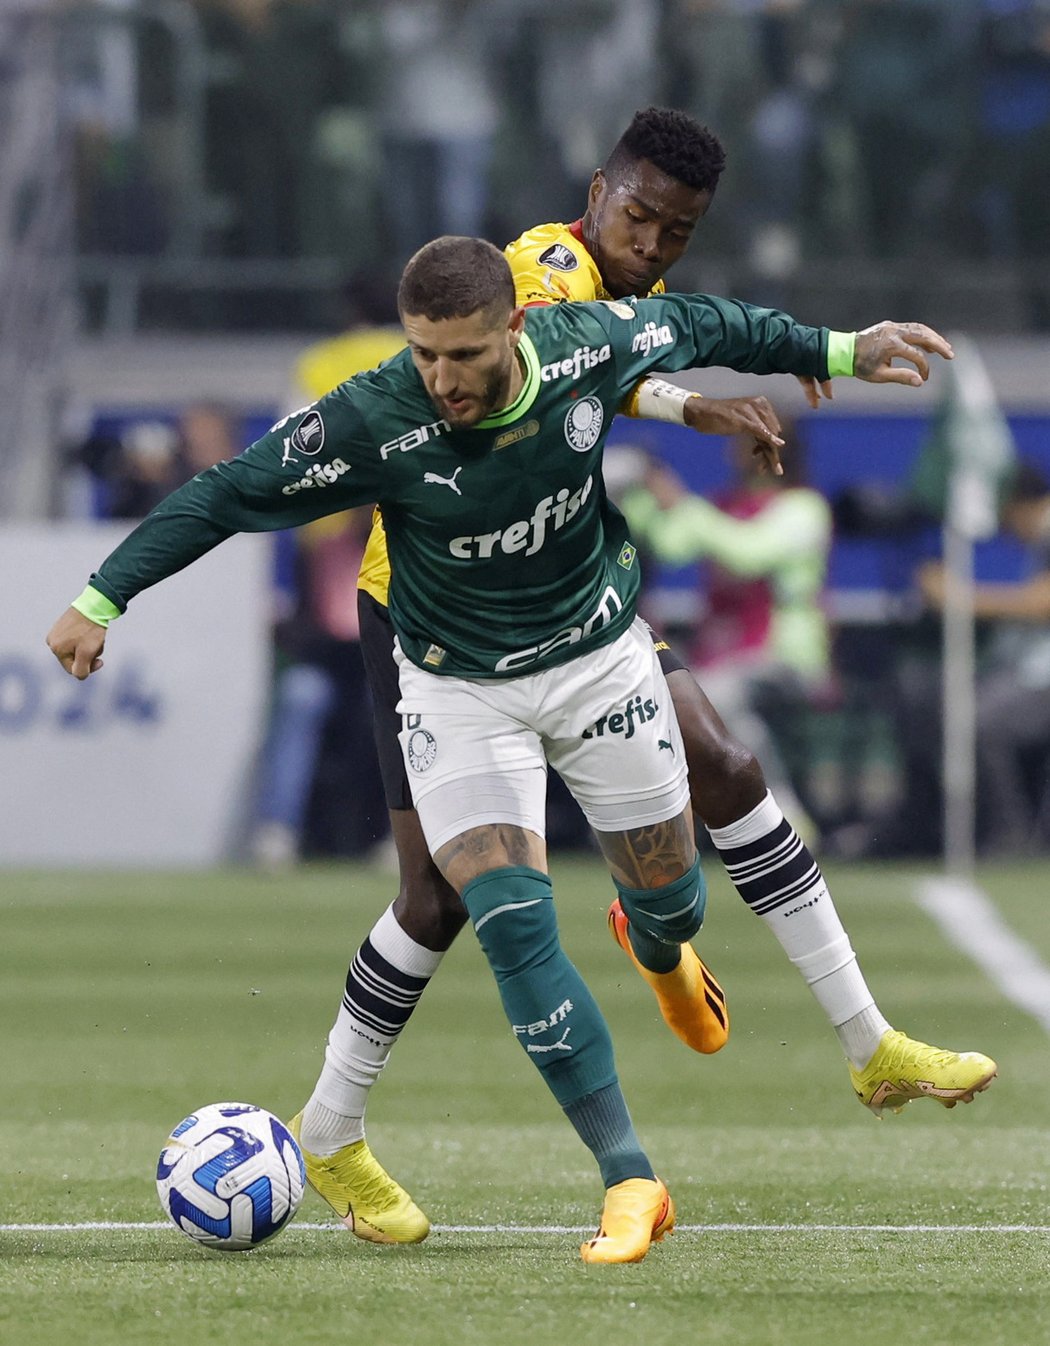 Fotbalisté Palmeiras tragicky přišli o svou věrnou fanynku